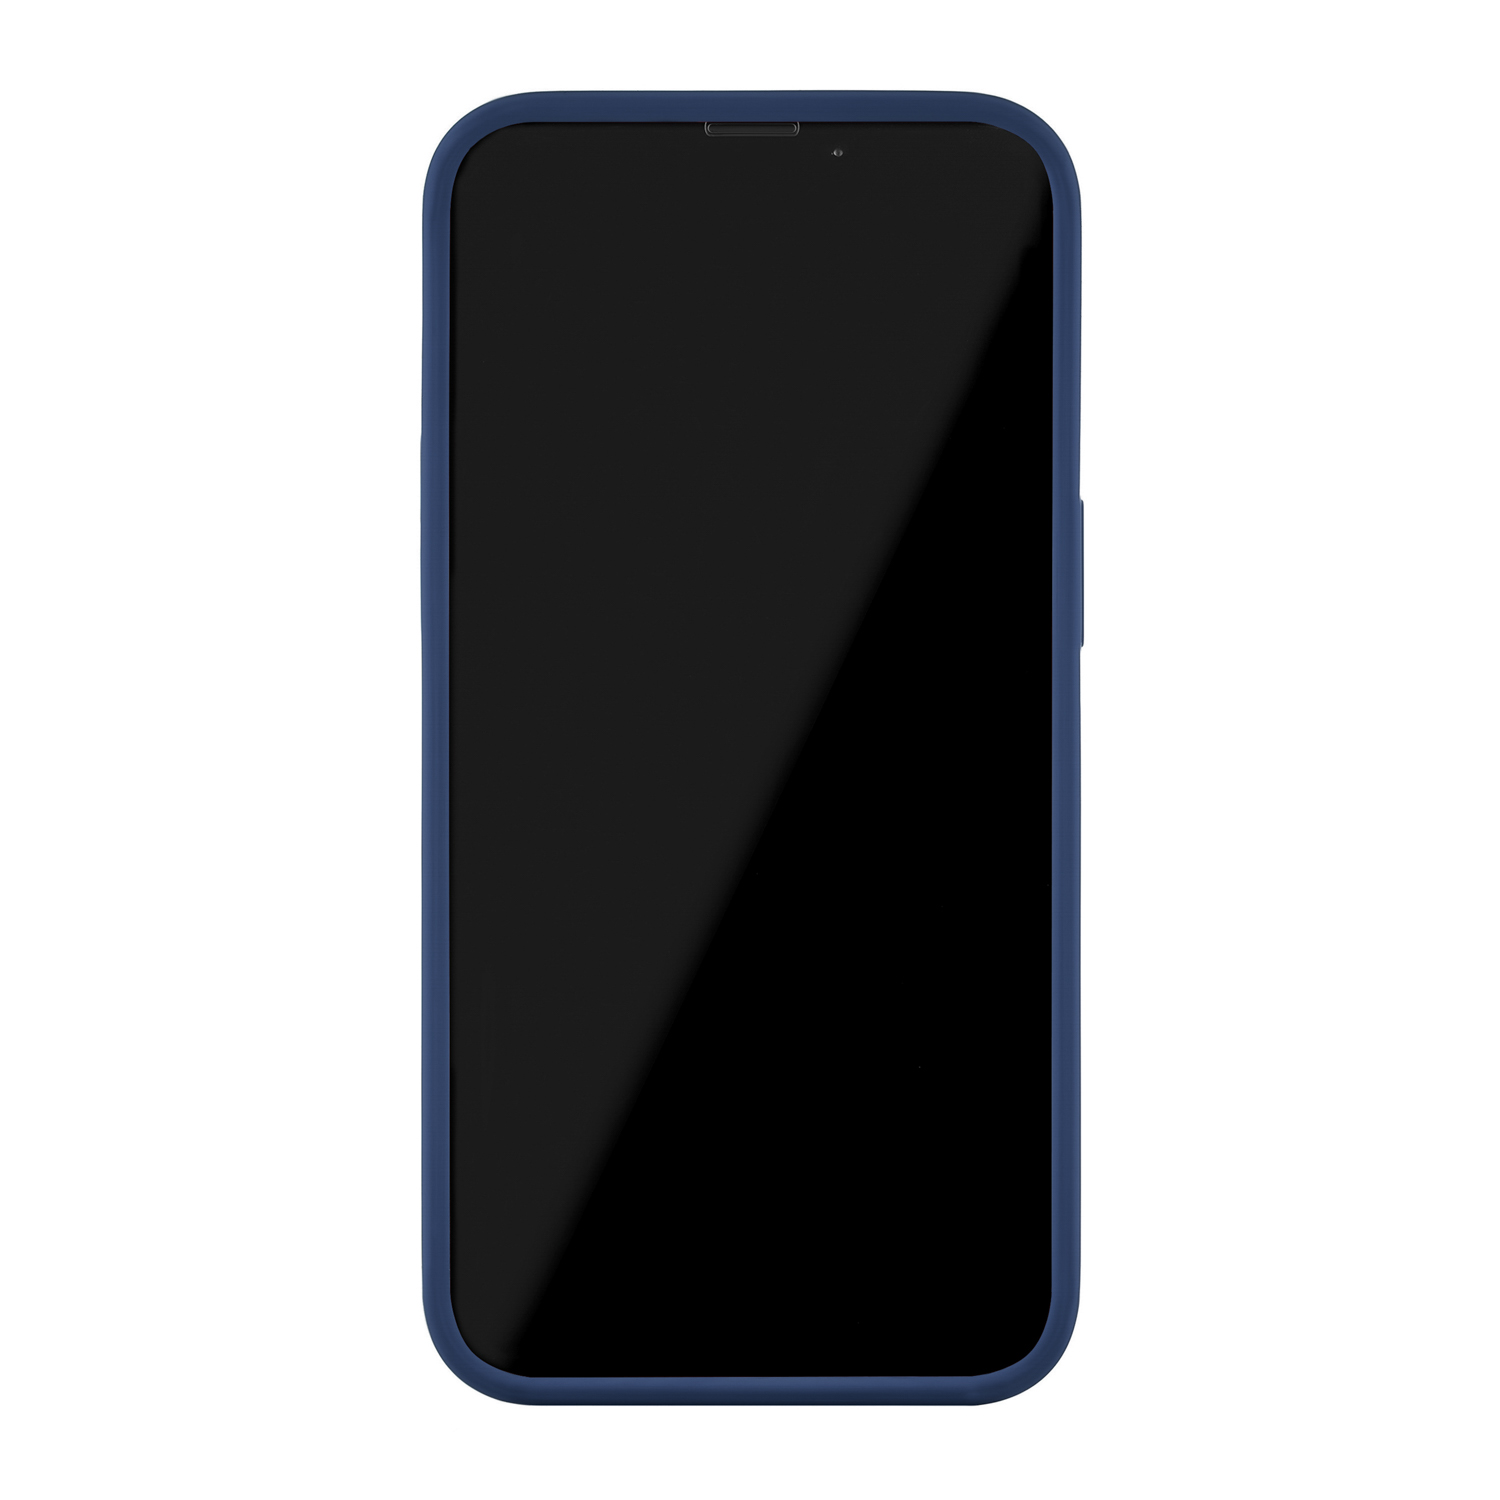 Touch Сase (Liquid silicone) for iPhone 13. Магнитная упаковка, тёмно-синий